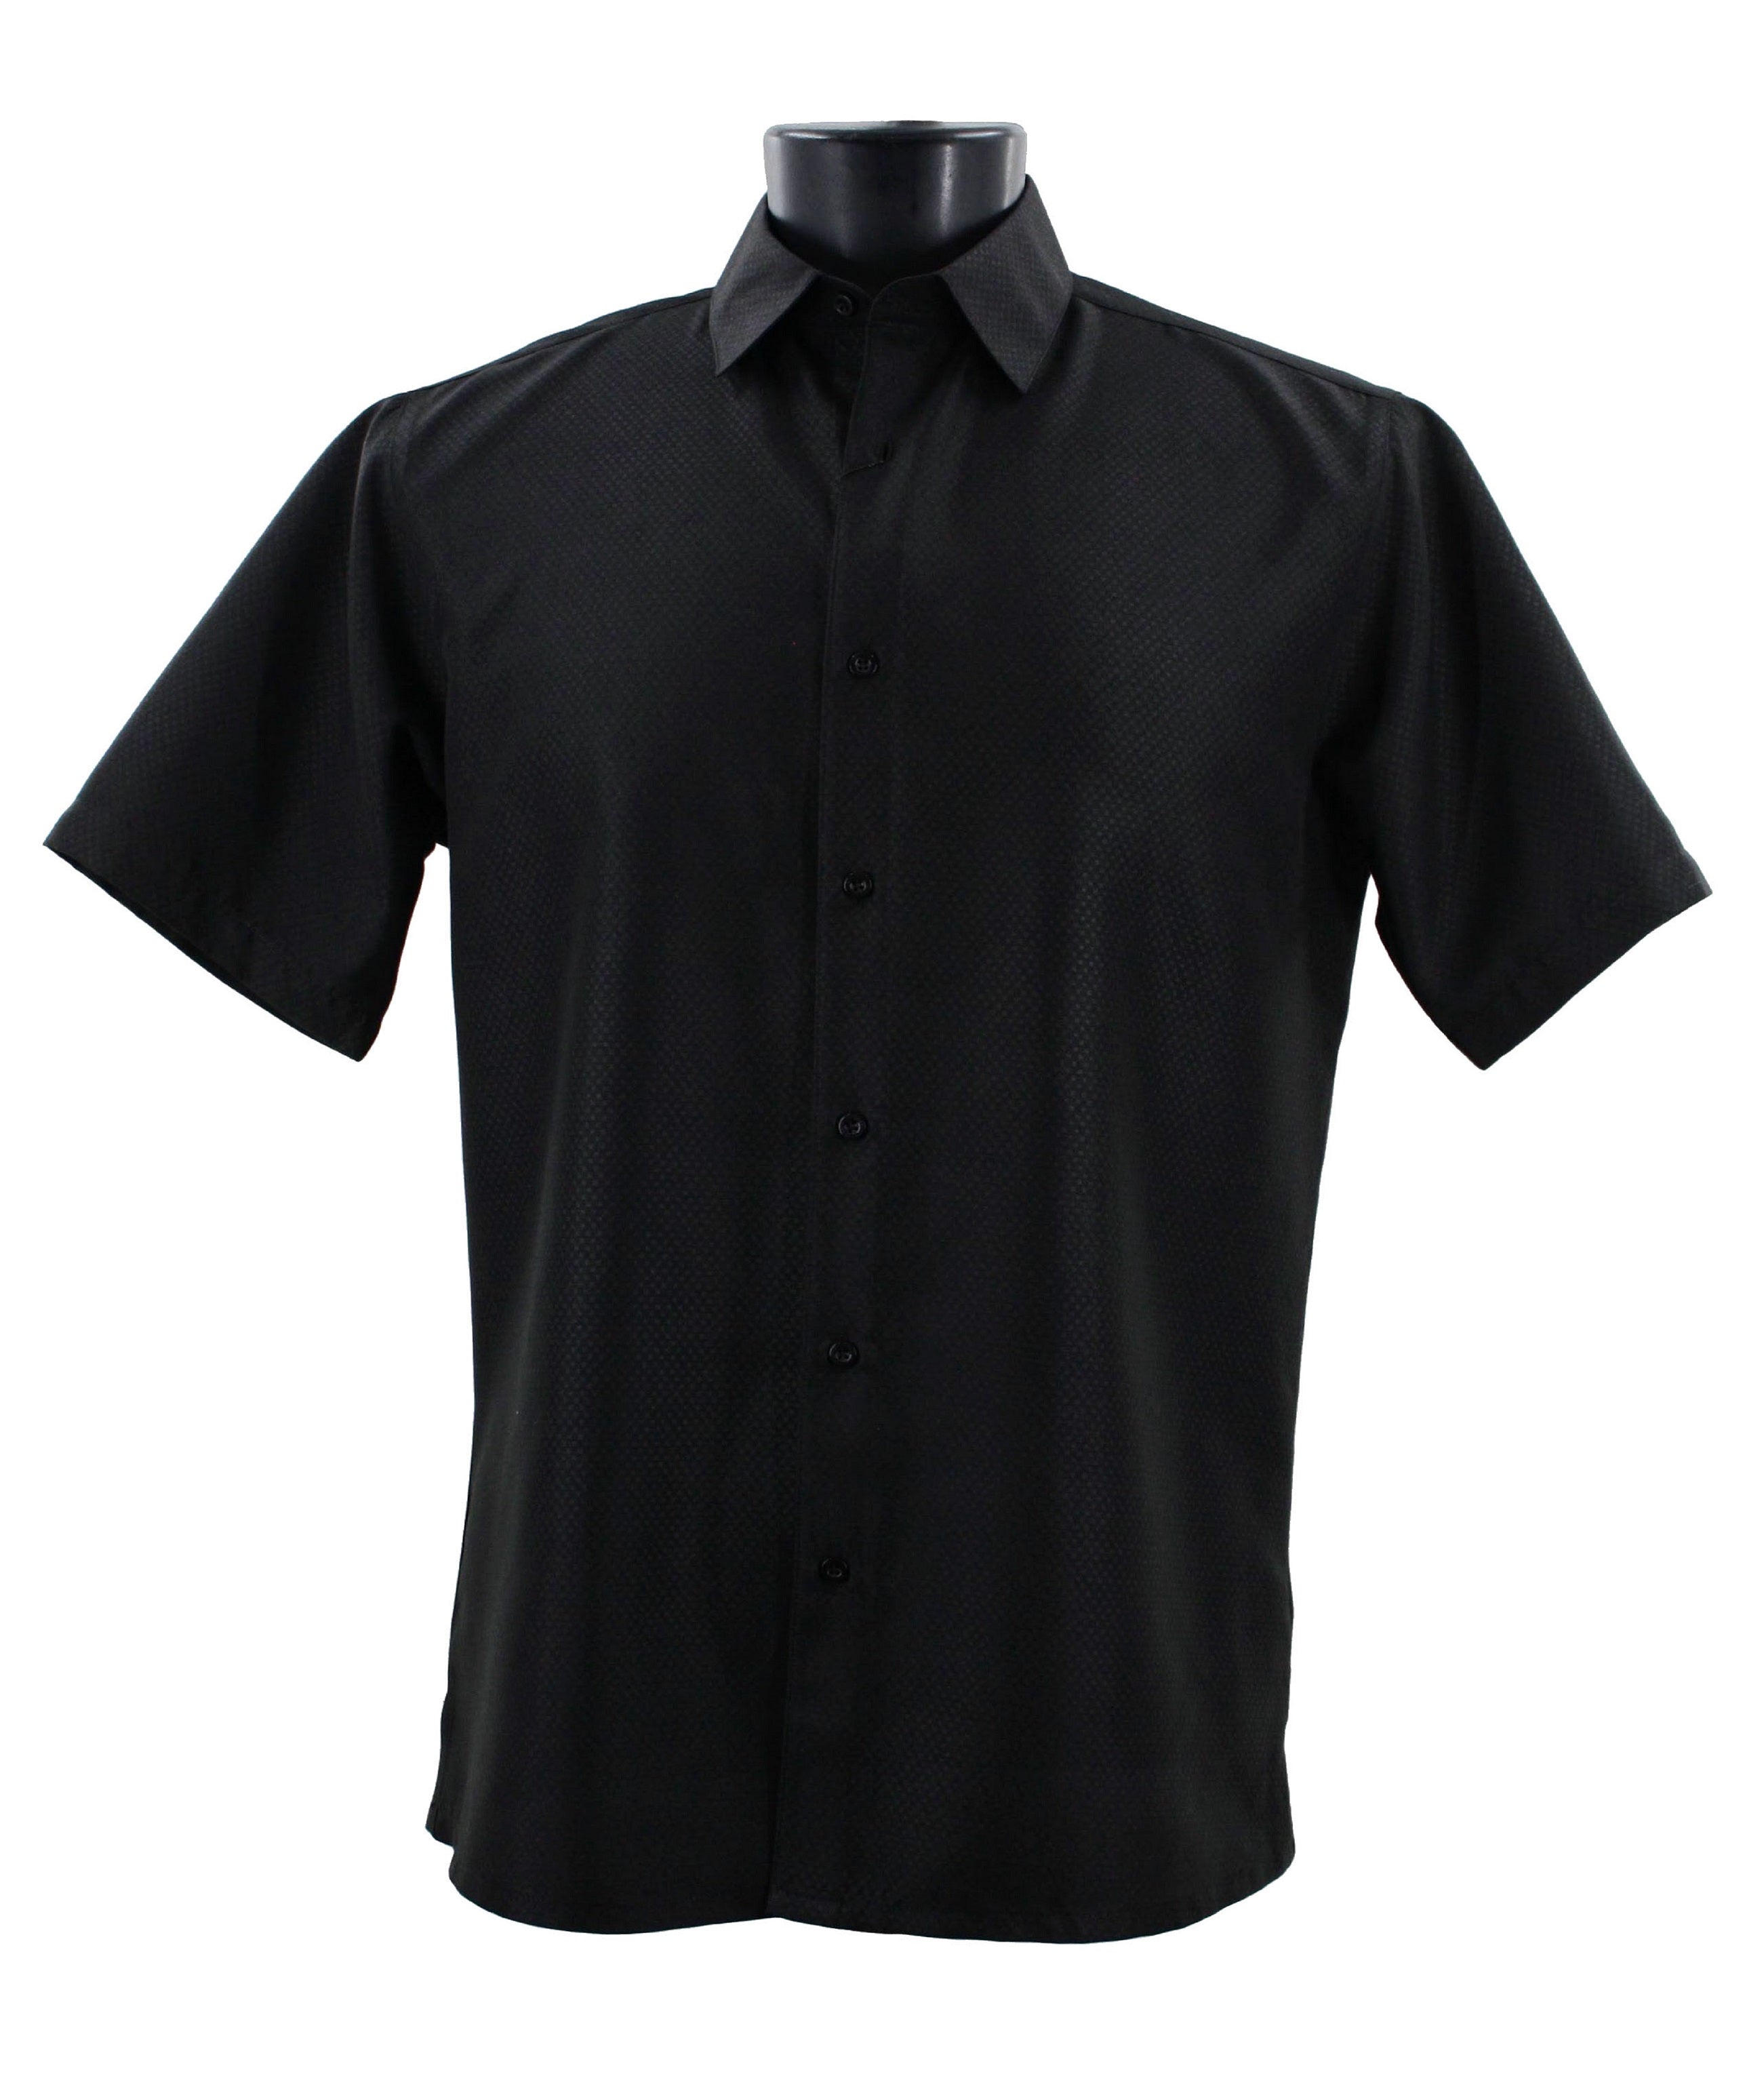 Sangi Short Sleeve Shirt S 2026 Black